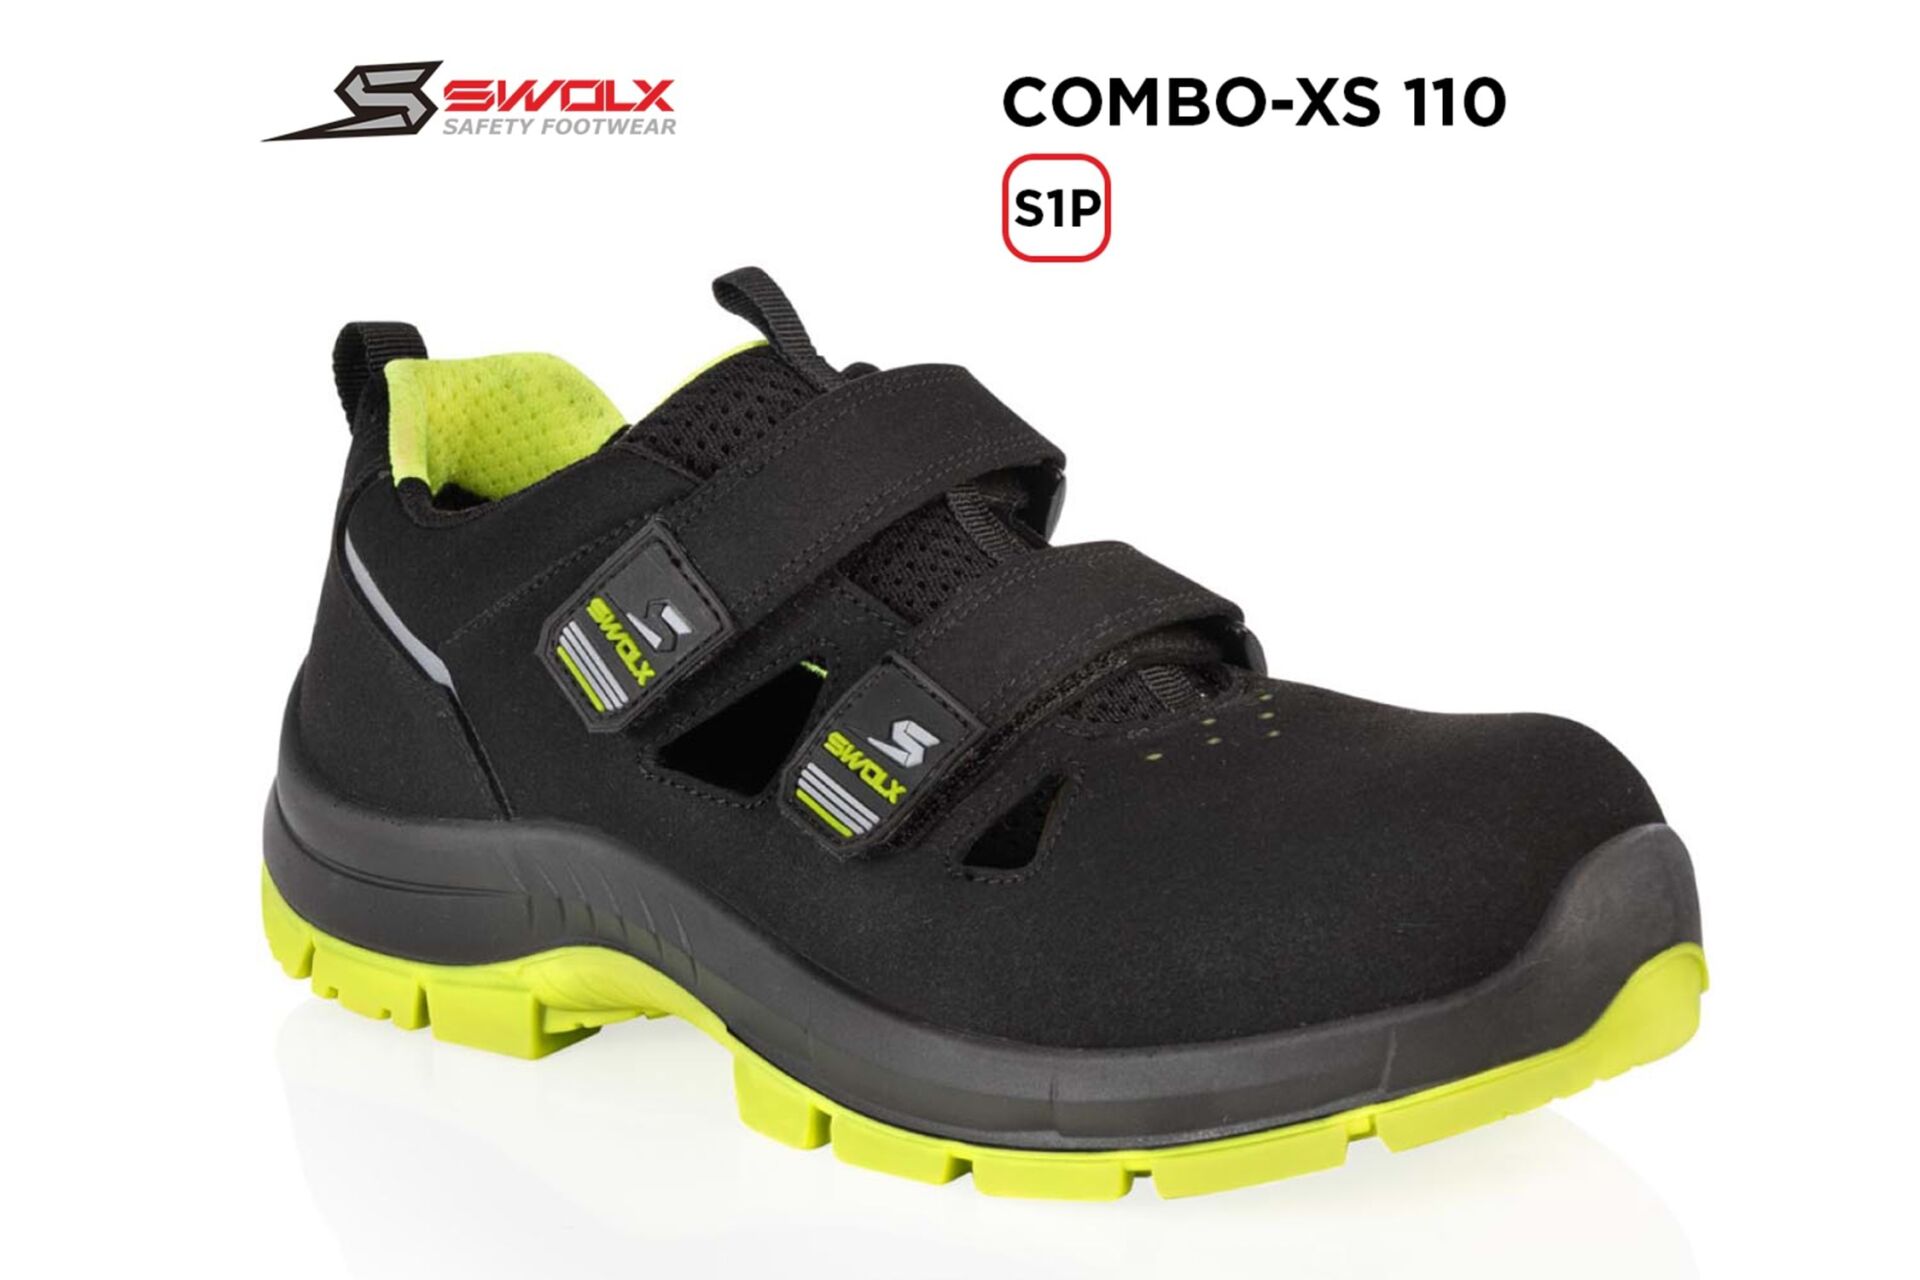 SWOLX Combo-Xs 110 S1P (Sun-X 110) İş Ayakkabısı